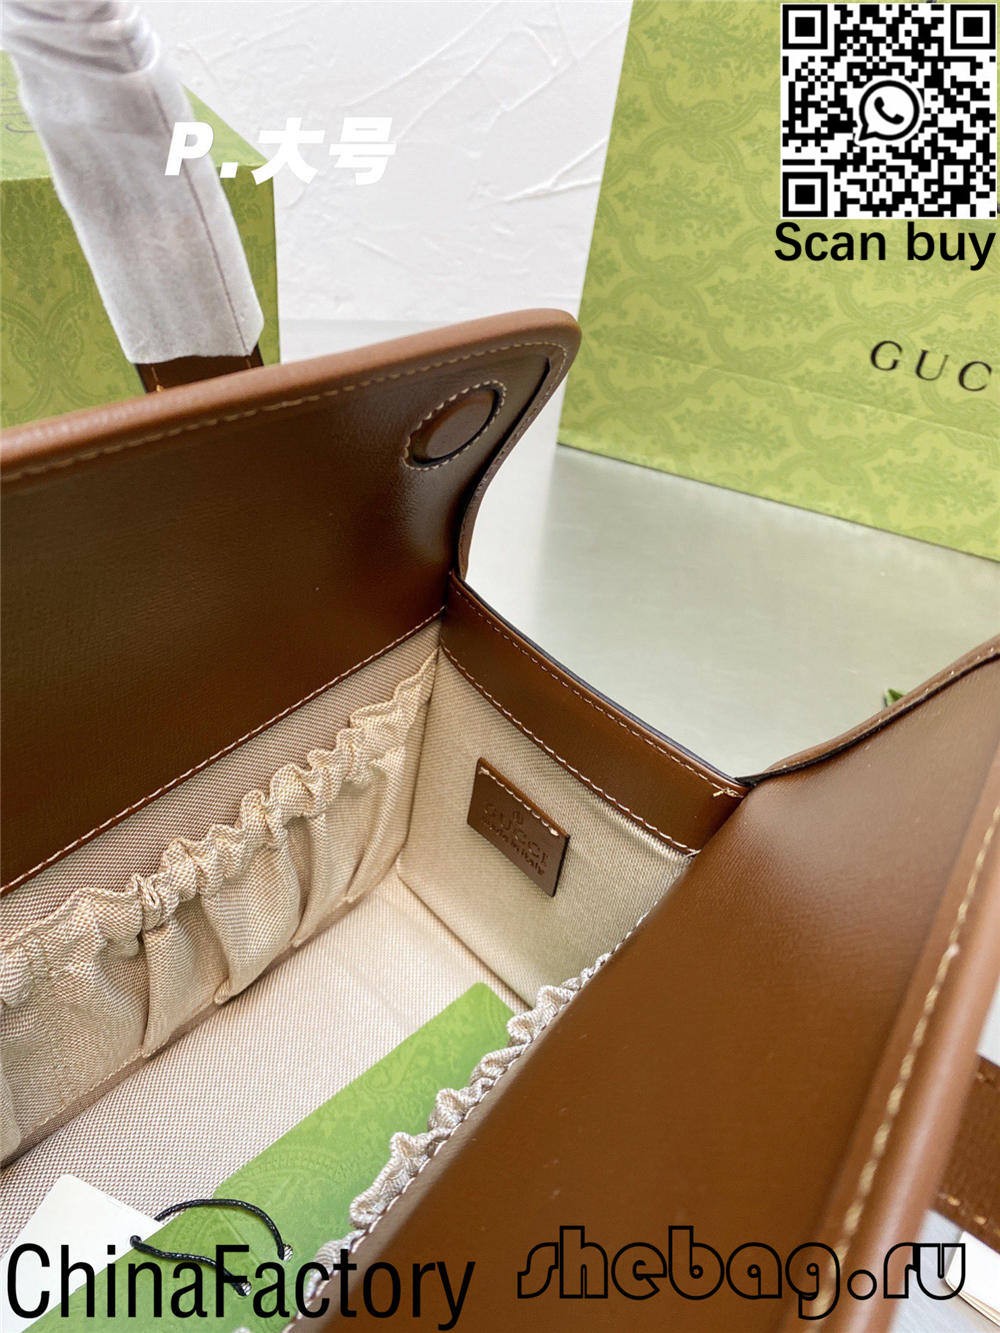 Augstas kvalitātes gucci horsebit klaiņojošās somas kopijas tiešsaistes iepirkšanās (atjaunināta 2022. gadā) — labākās kvalitātes viltotās Louis Vuitton somas tiešsaistes veikals, dizainera somas kopija ru